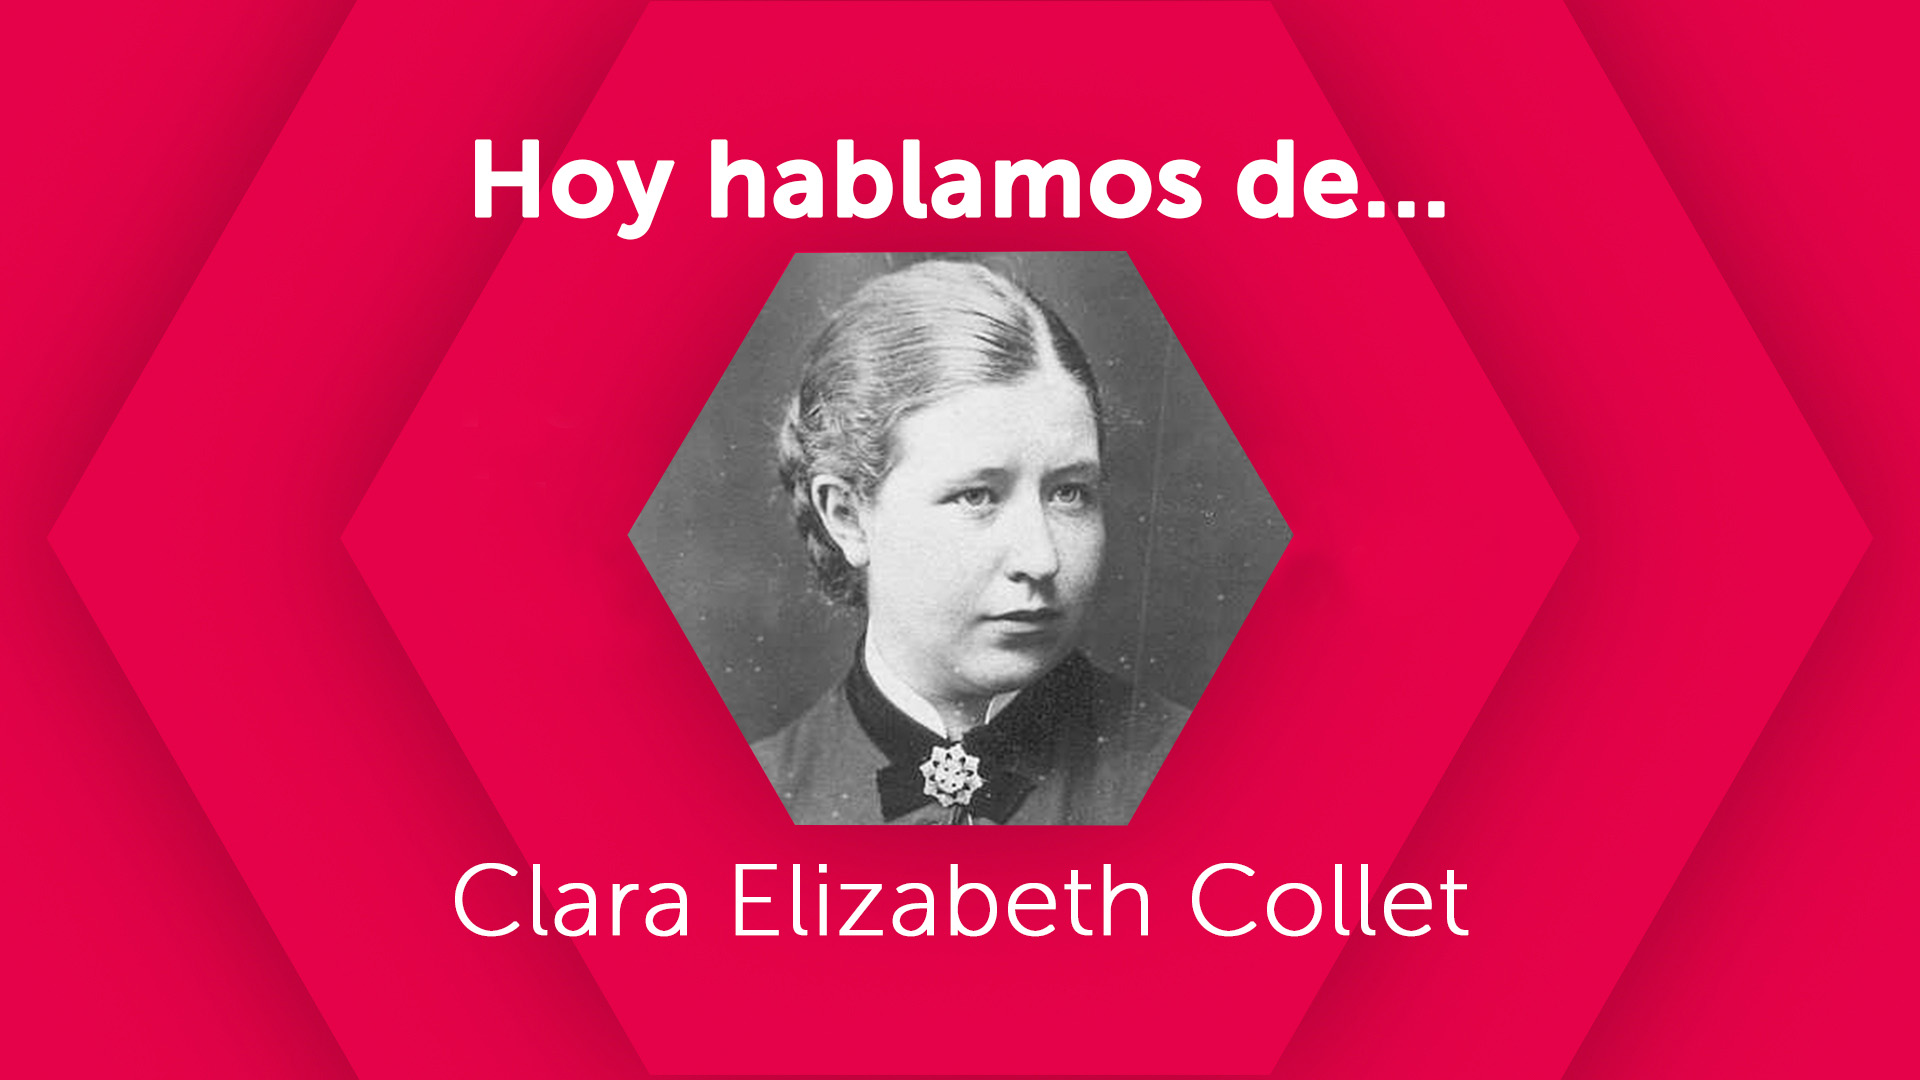 Hoy hablamos de Clara Elizabeth Collet